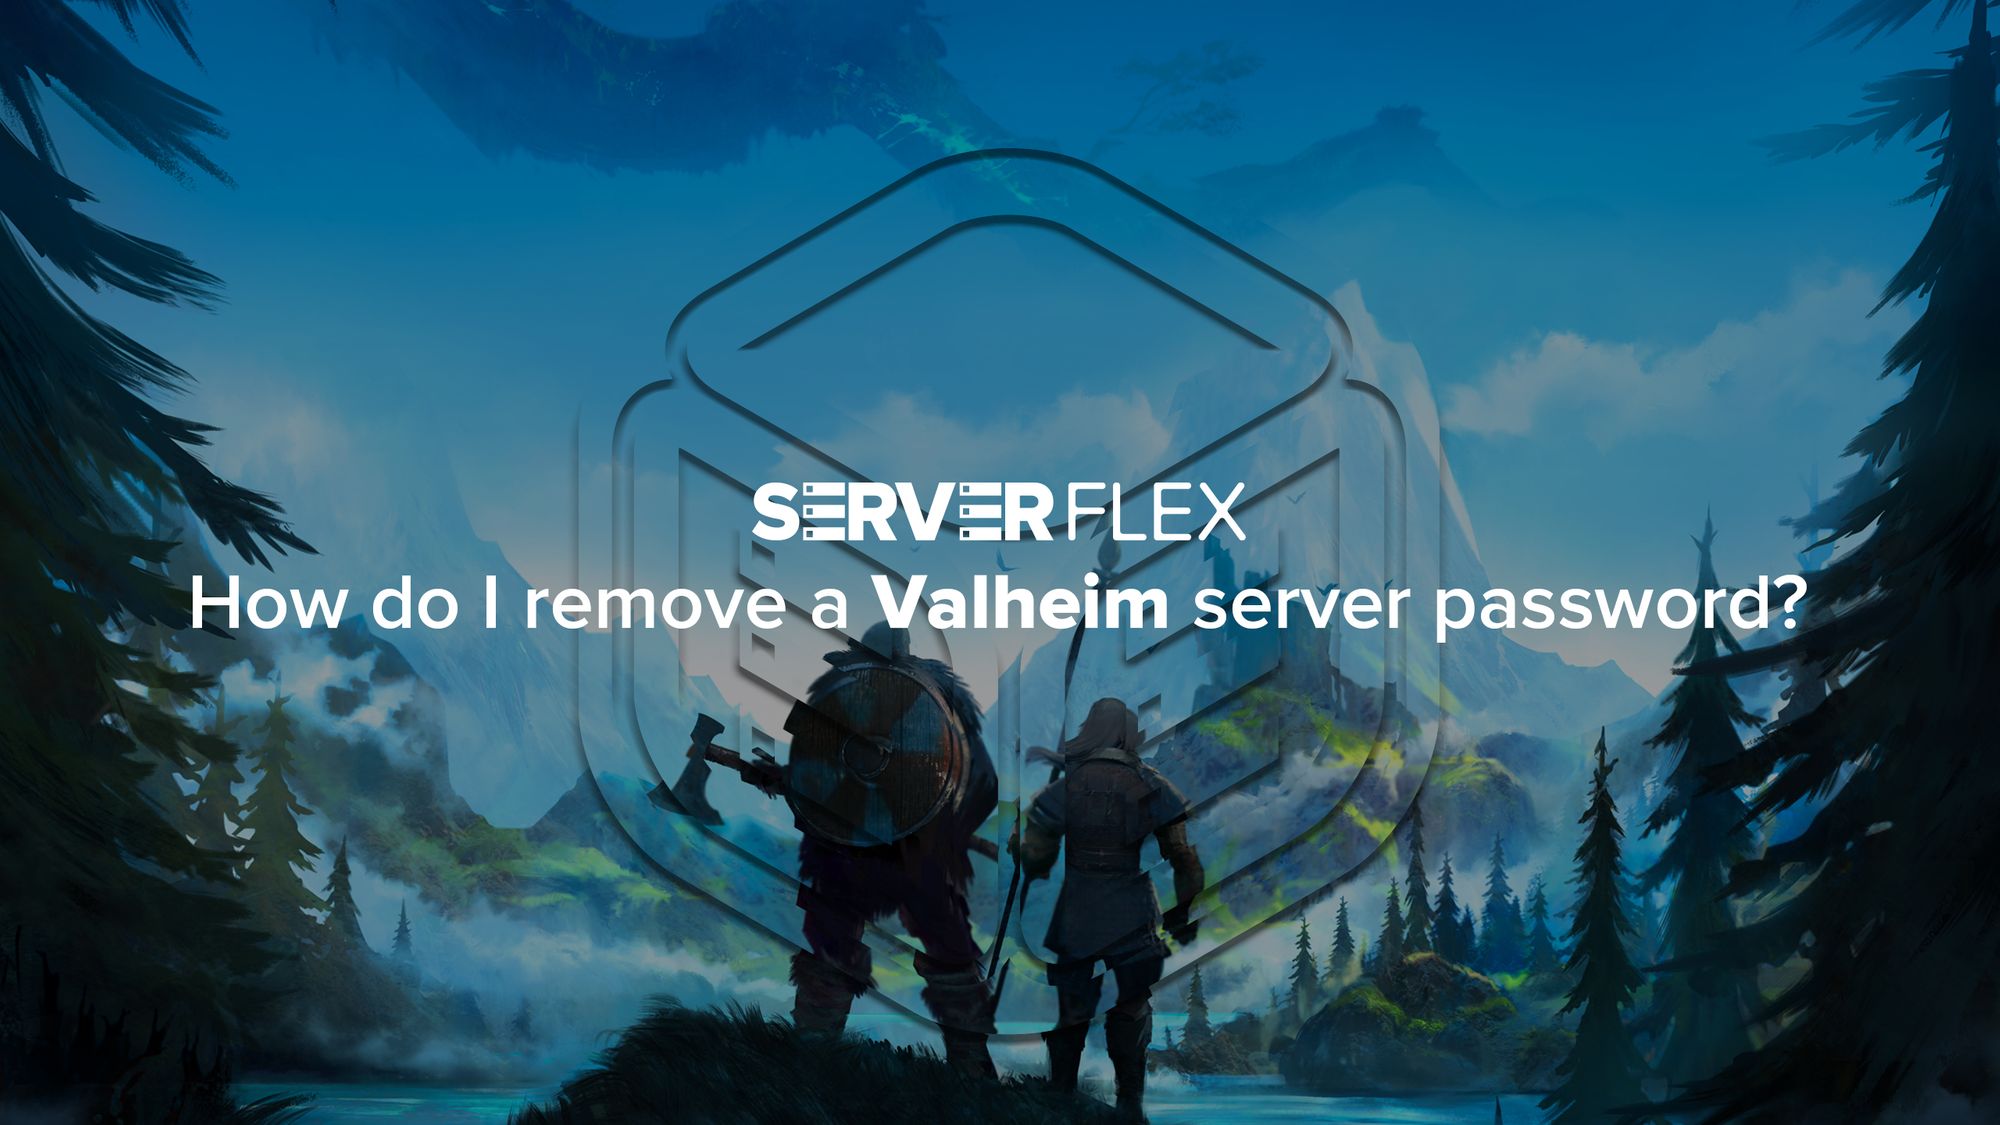 How do I remove the password from a Valheim server?